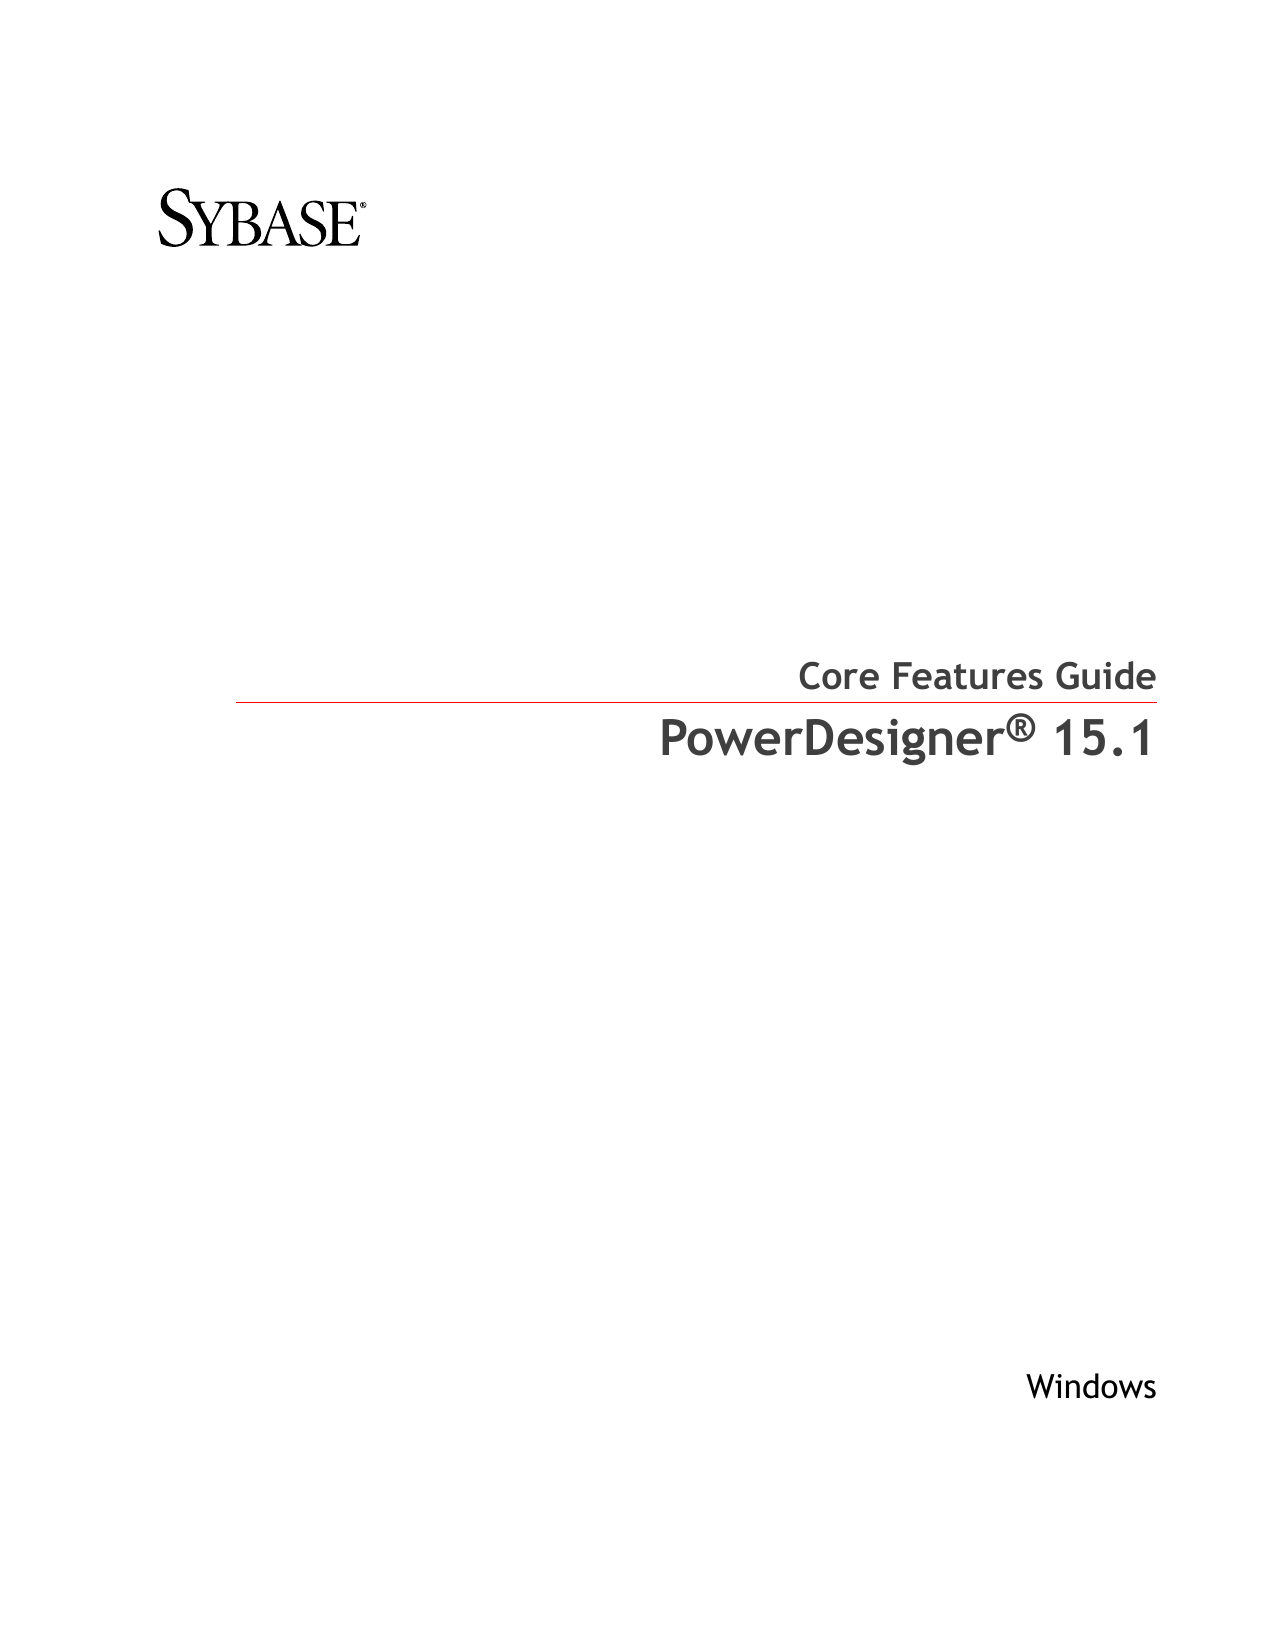 sybase powerdesigner training